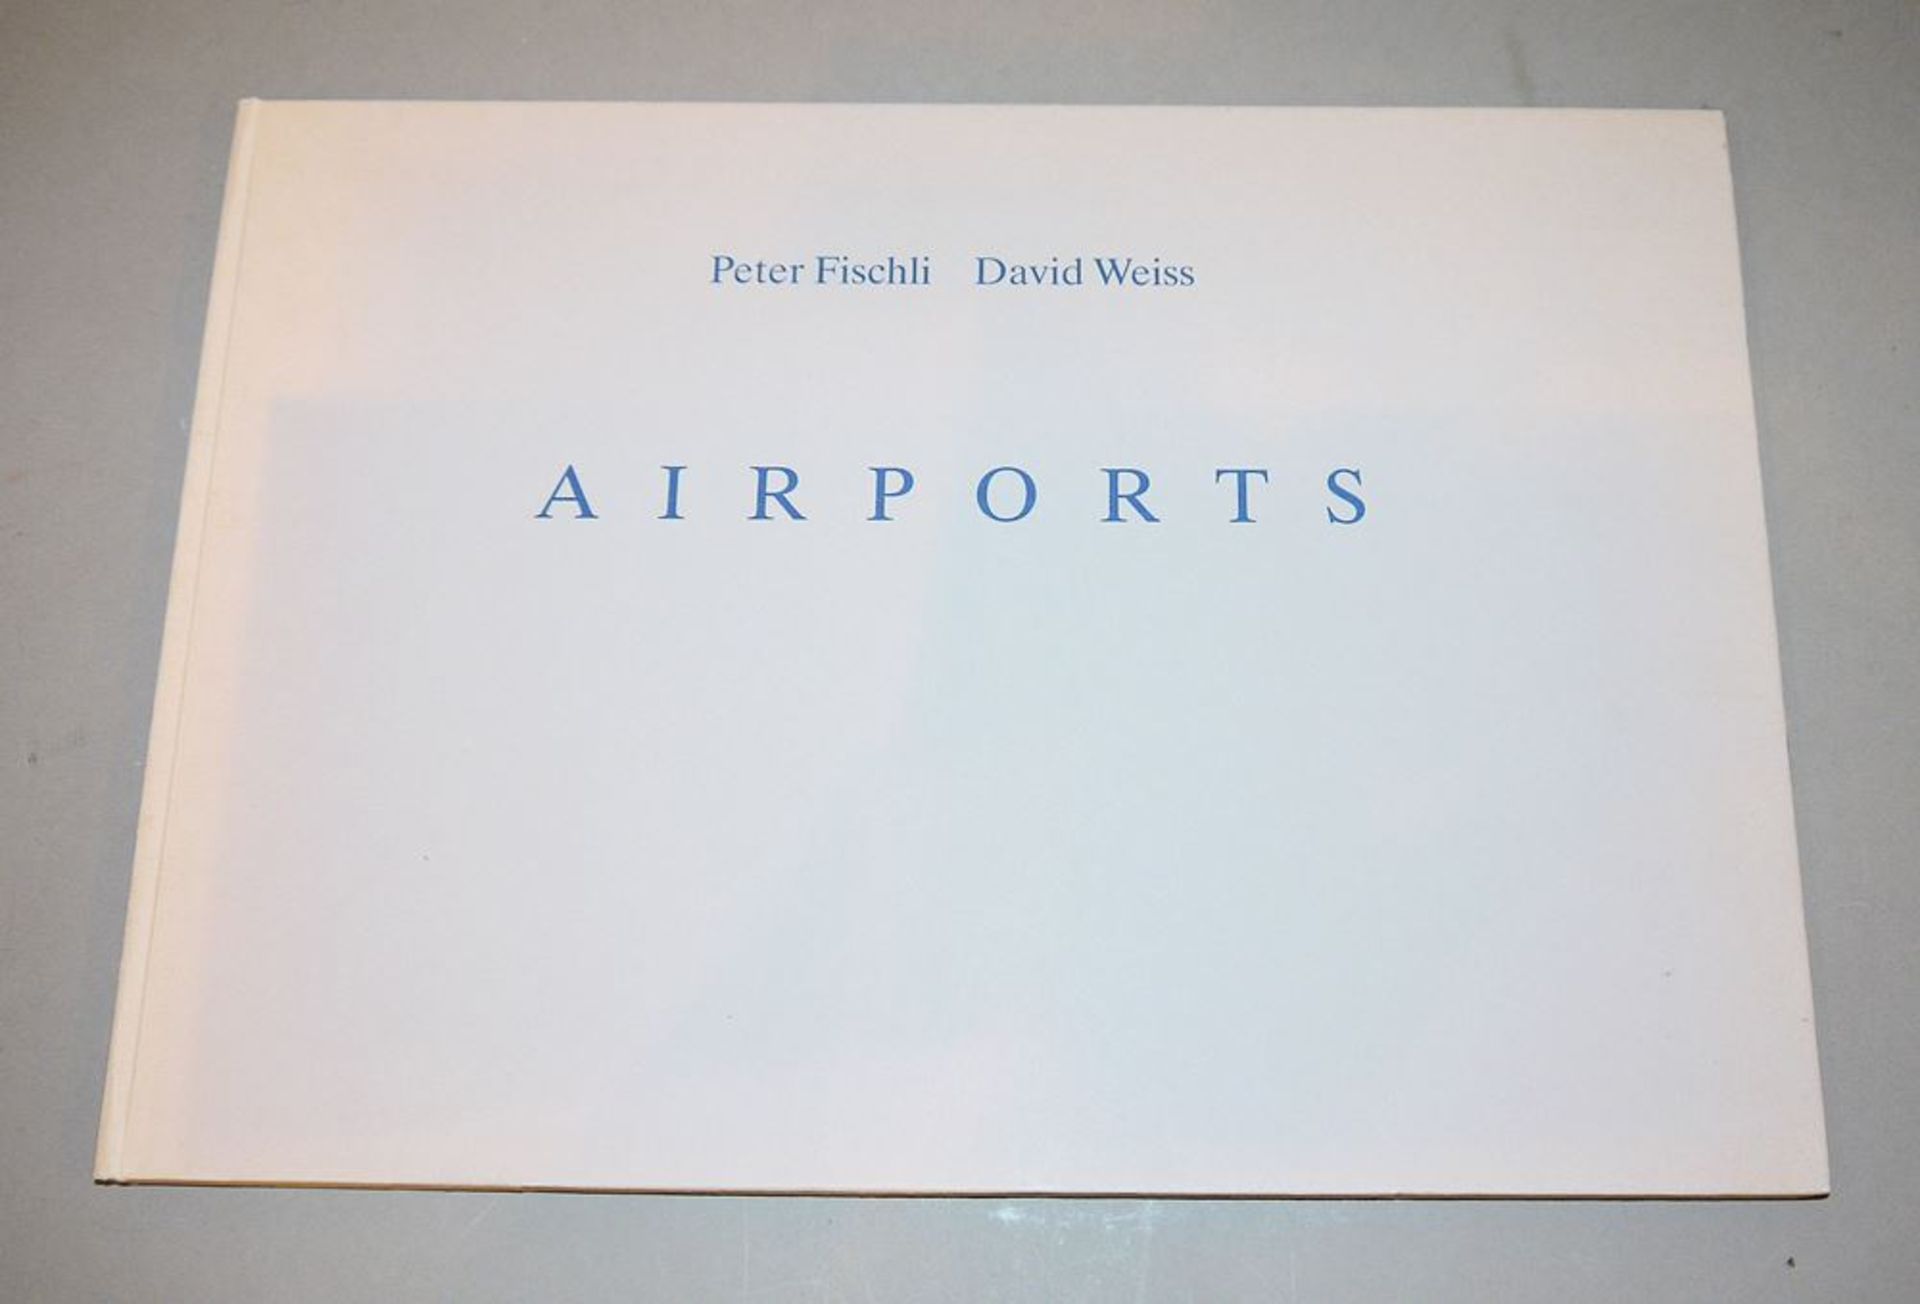 Peter Fischli & David Weiss, "Airports", 1990